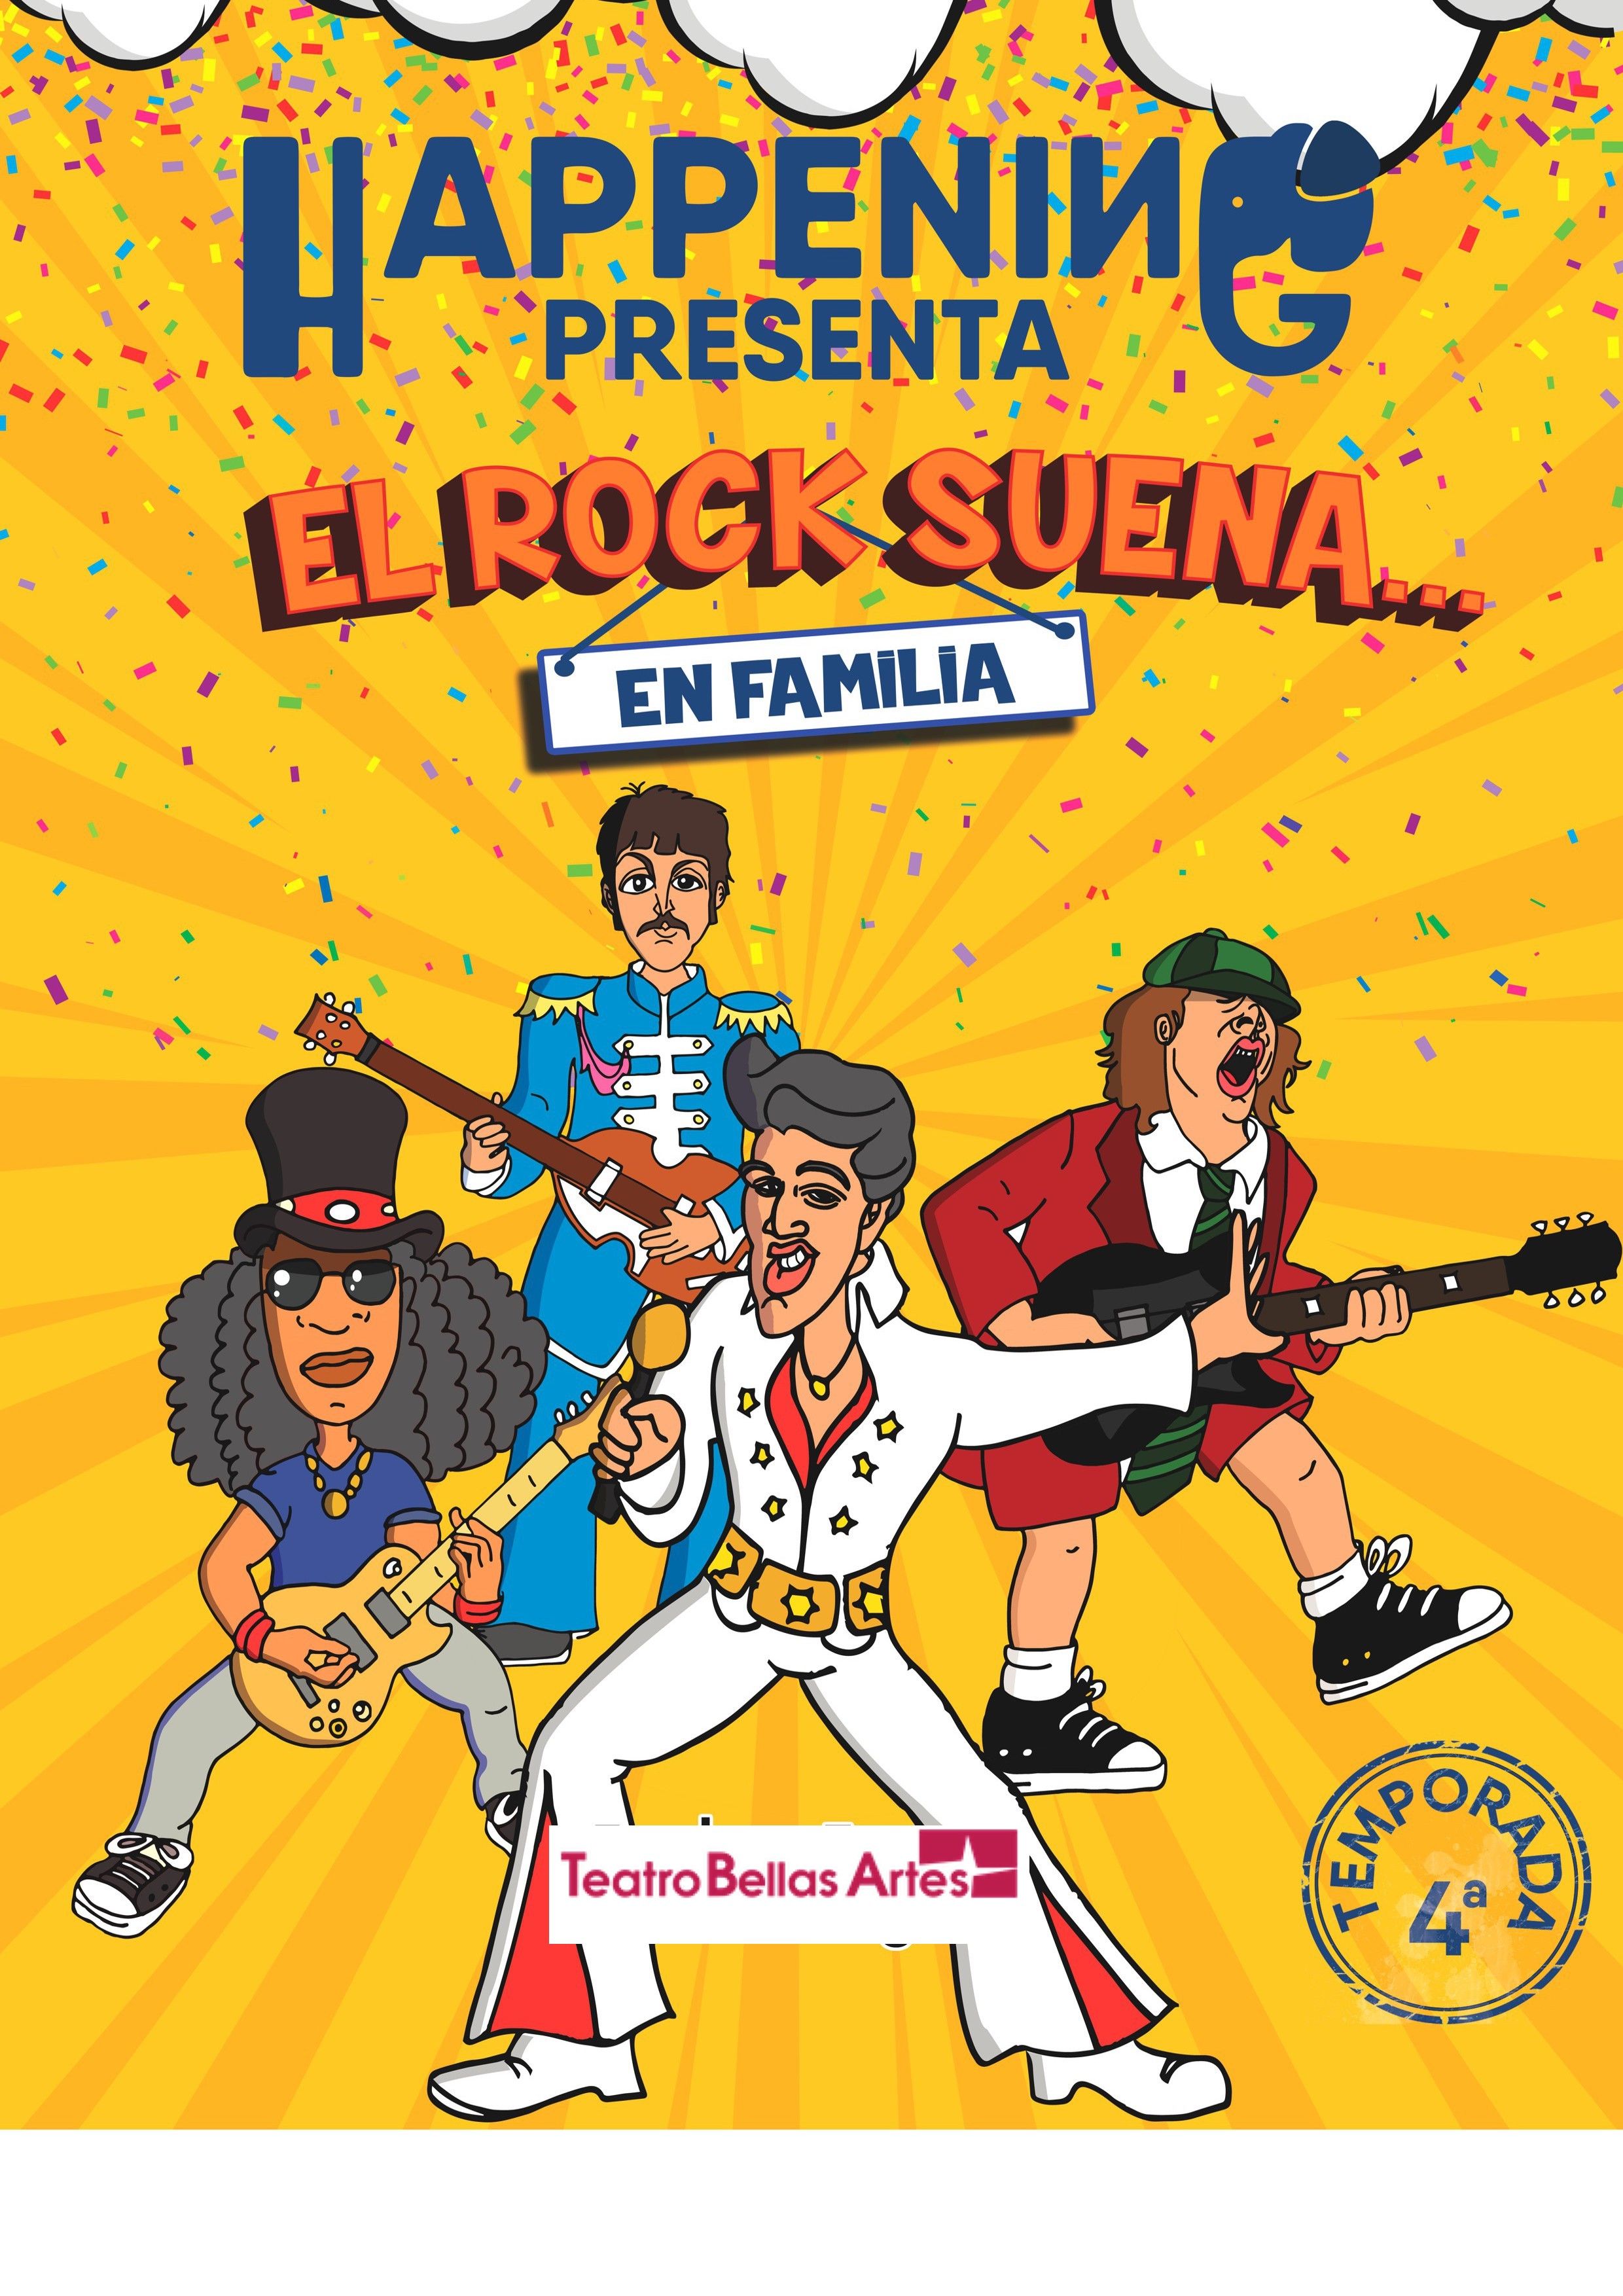 EL ROCK SUENA EN FAMILIA en el Teatro Bellas Artes